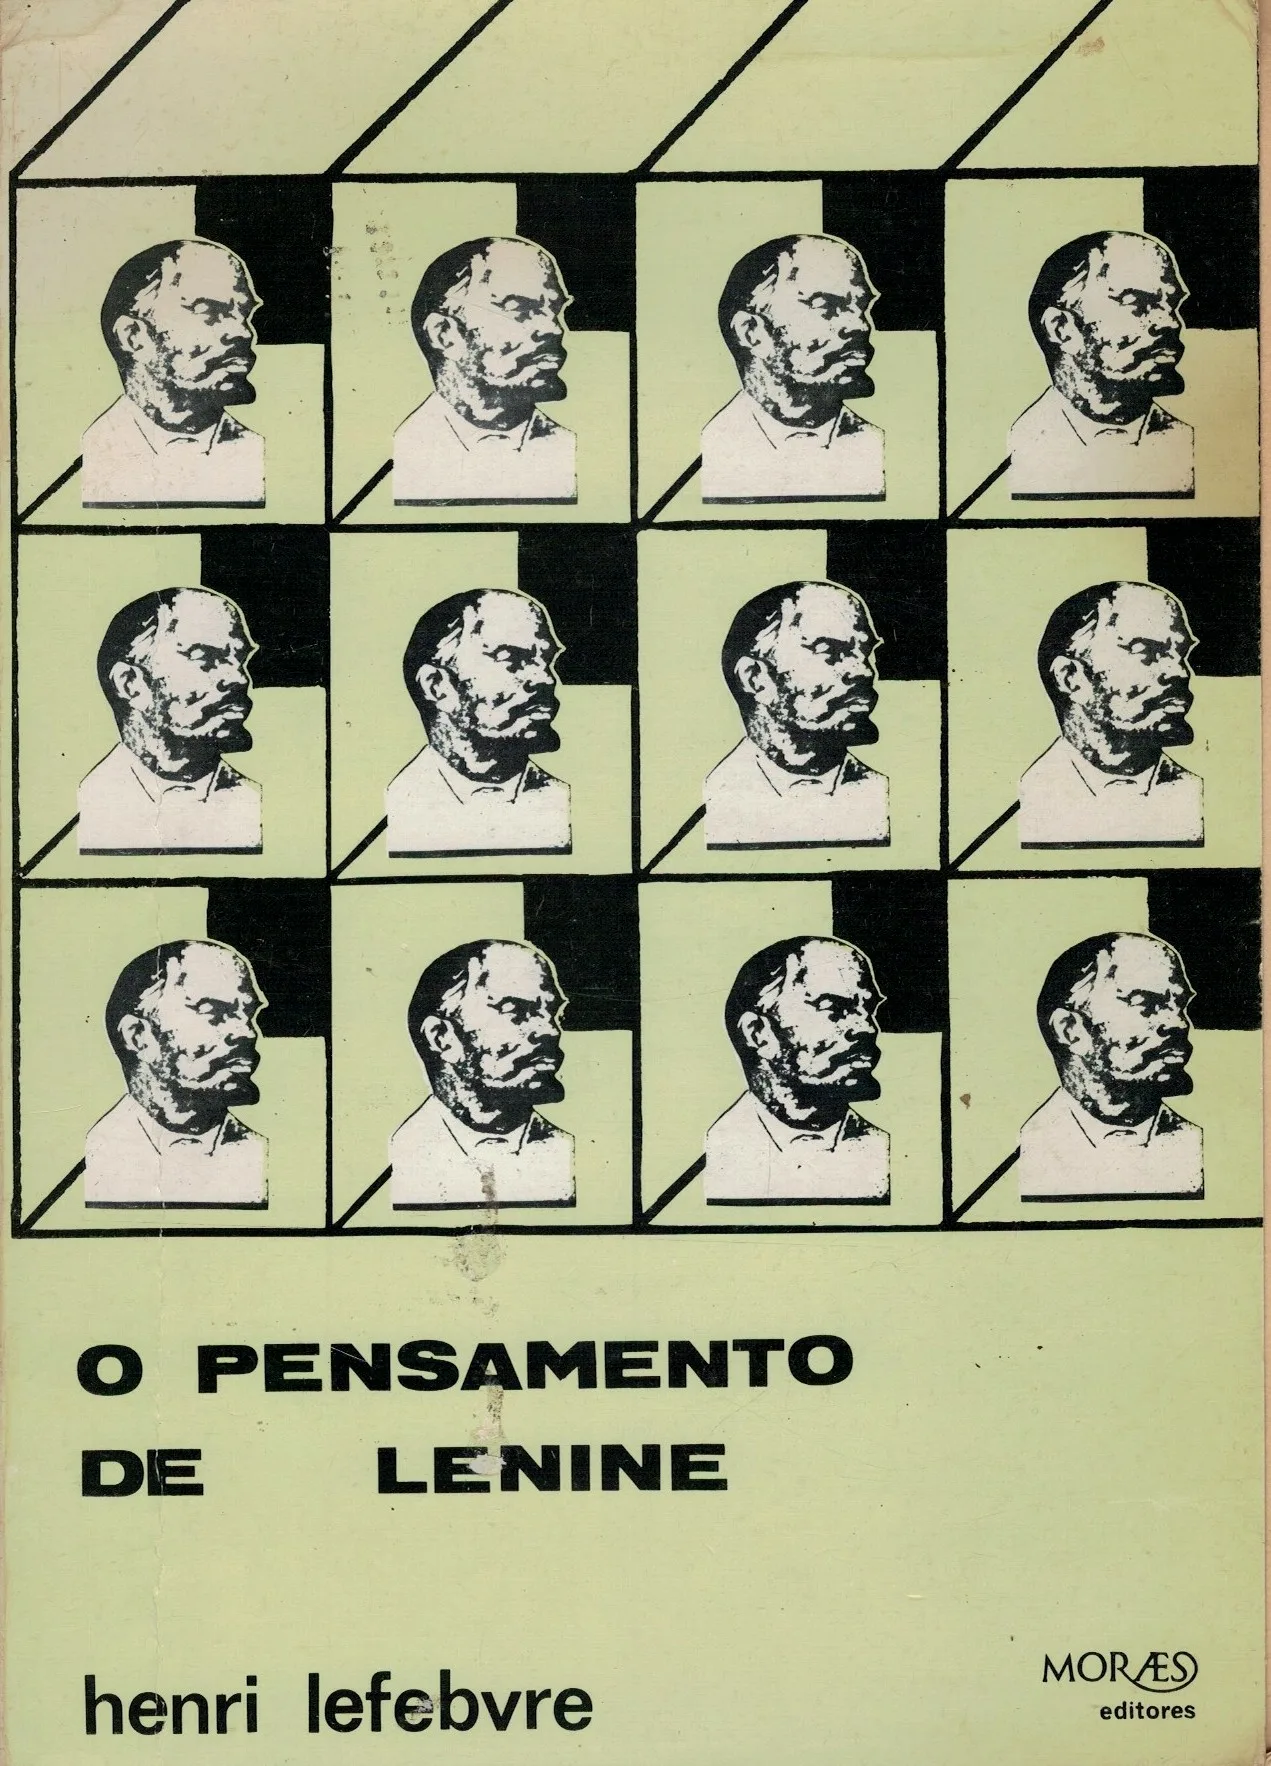 O Pensamento de Lenine de Henri Lefebvre